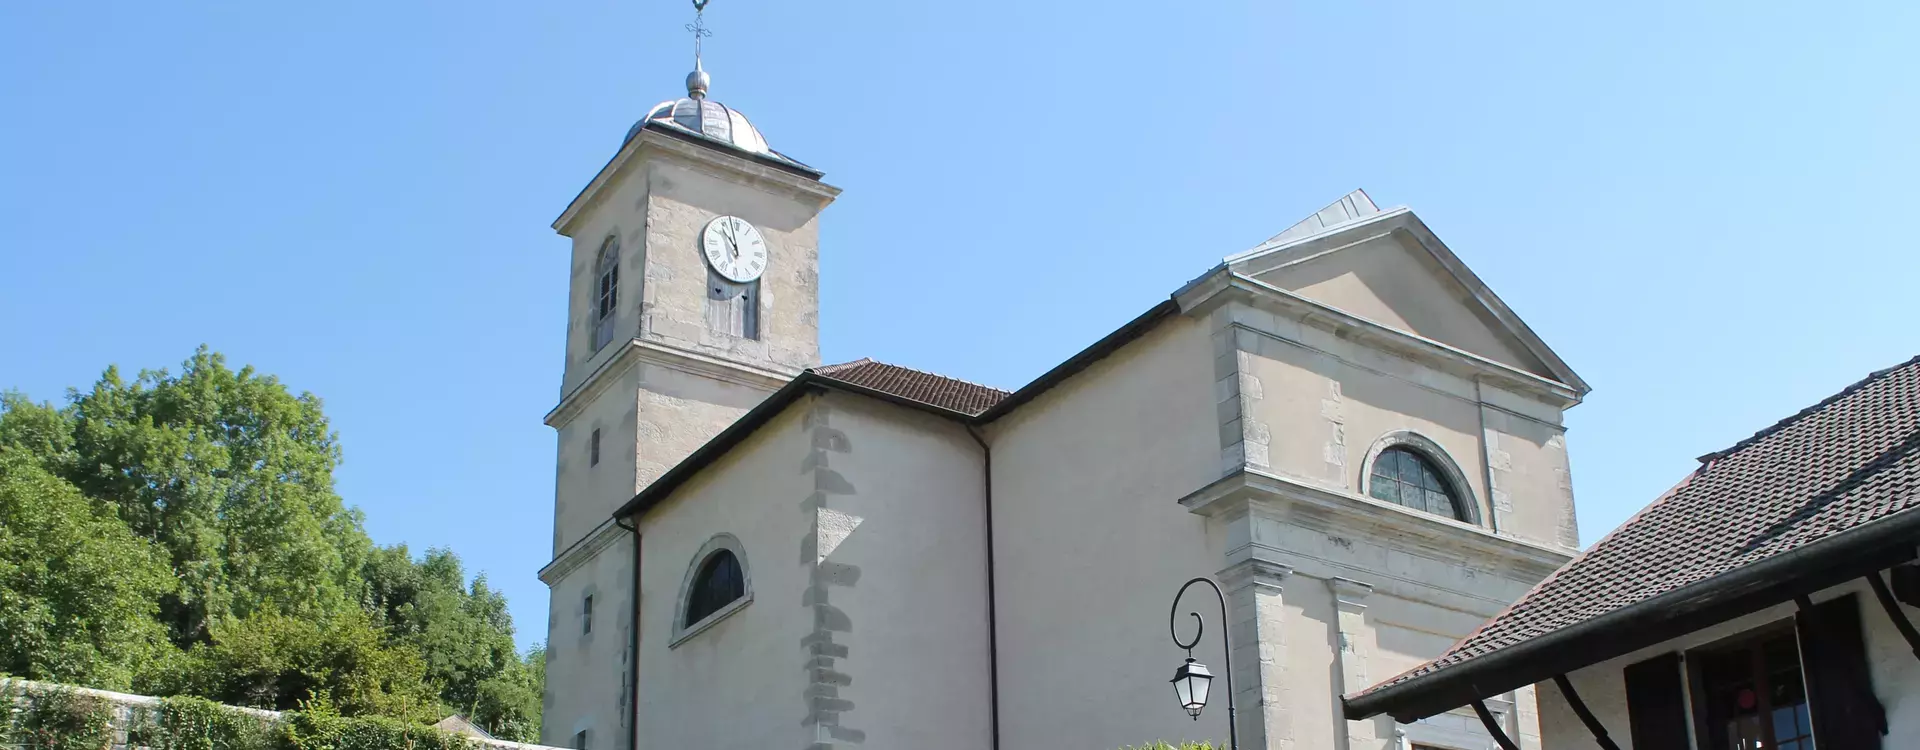 L'Eglise Saint-Etienne de Clermont en Genevois